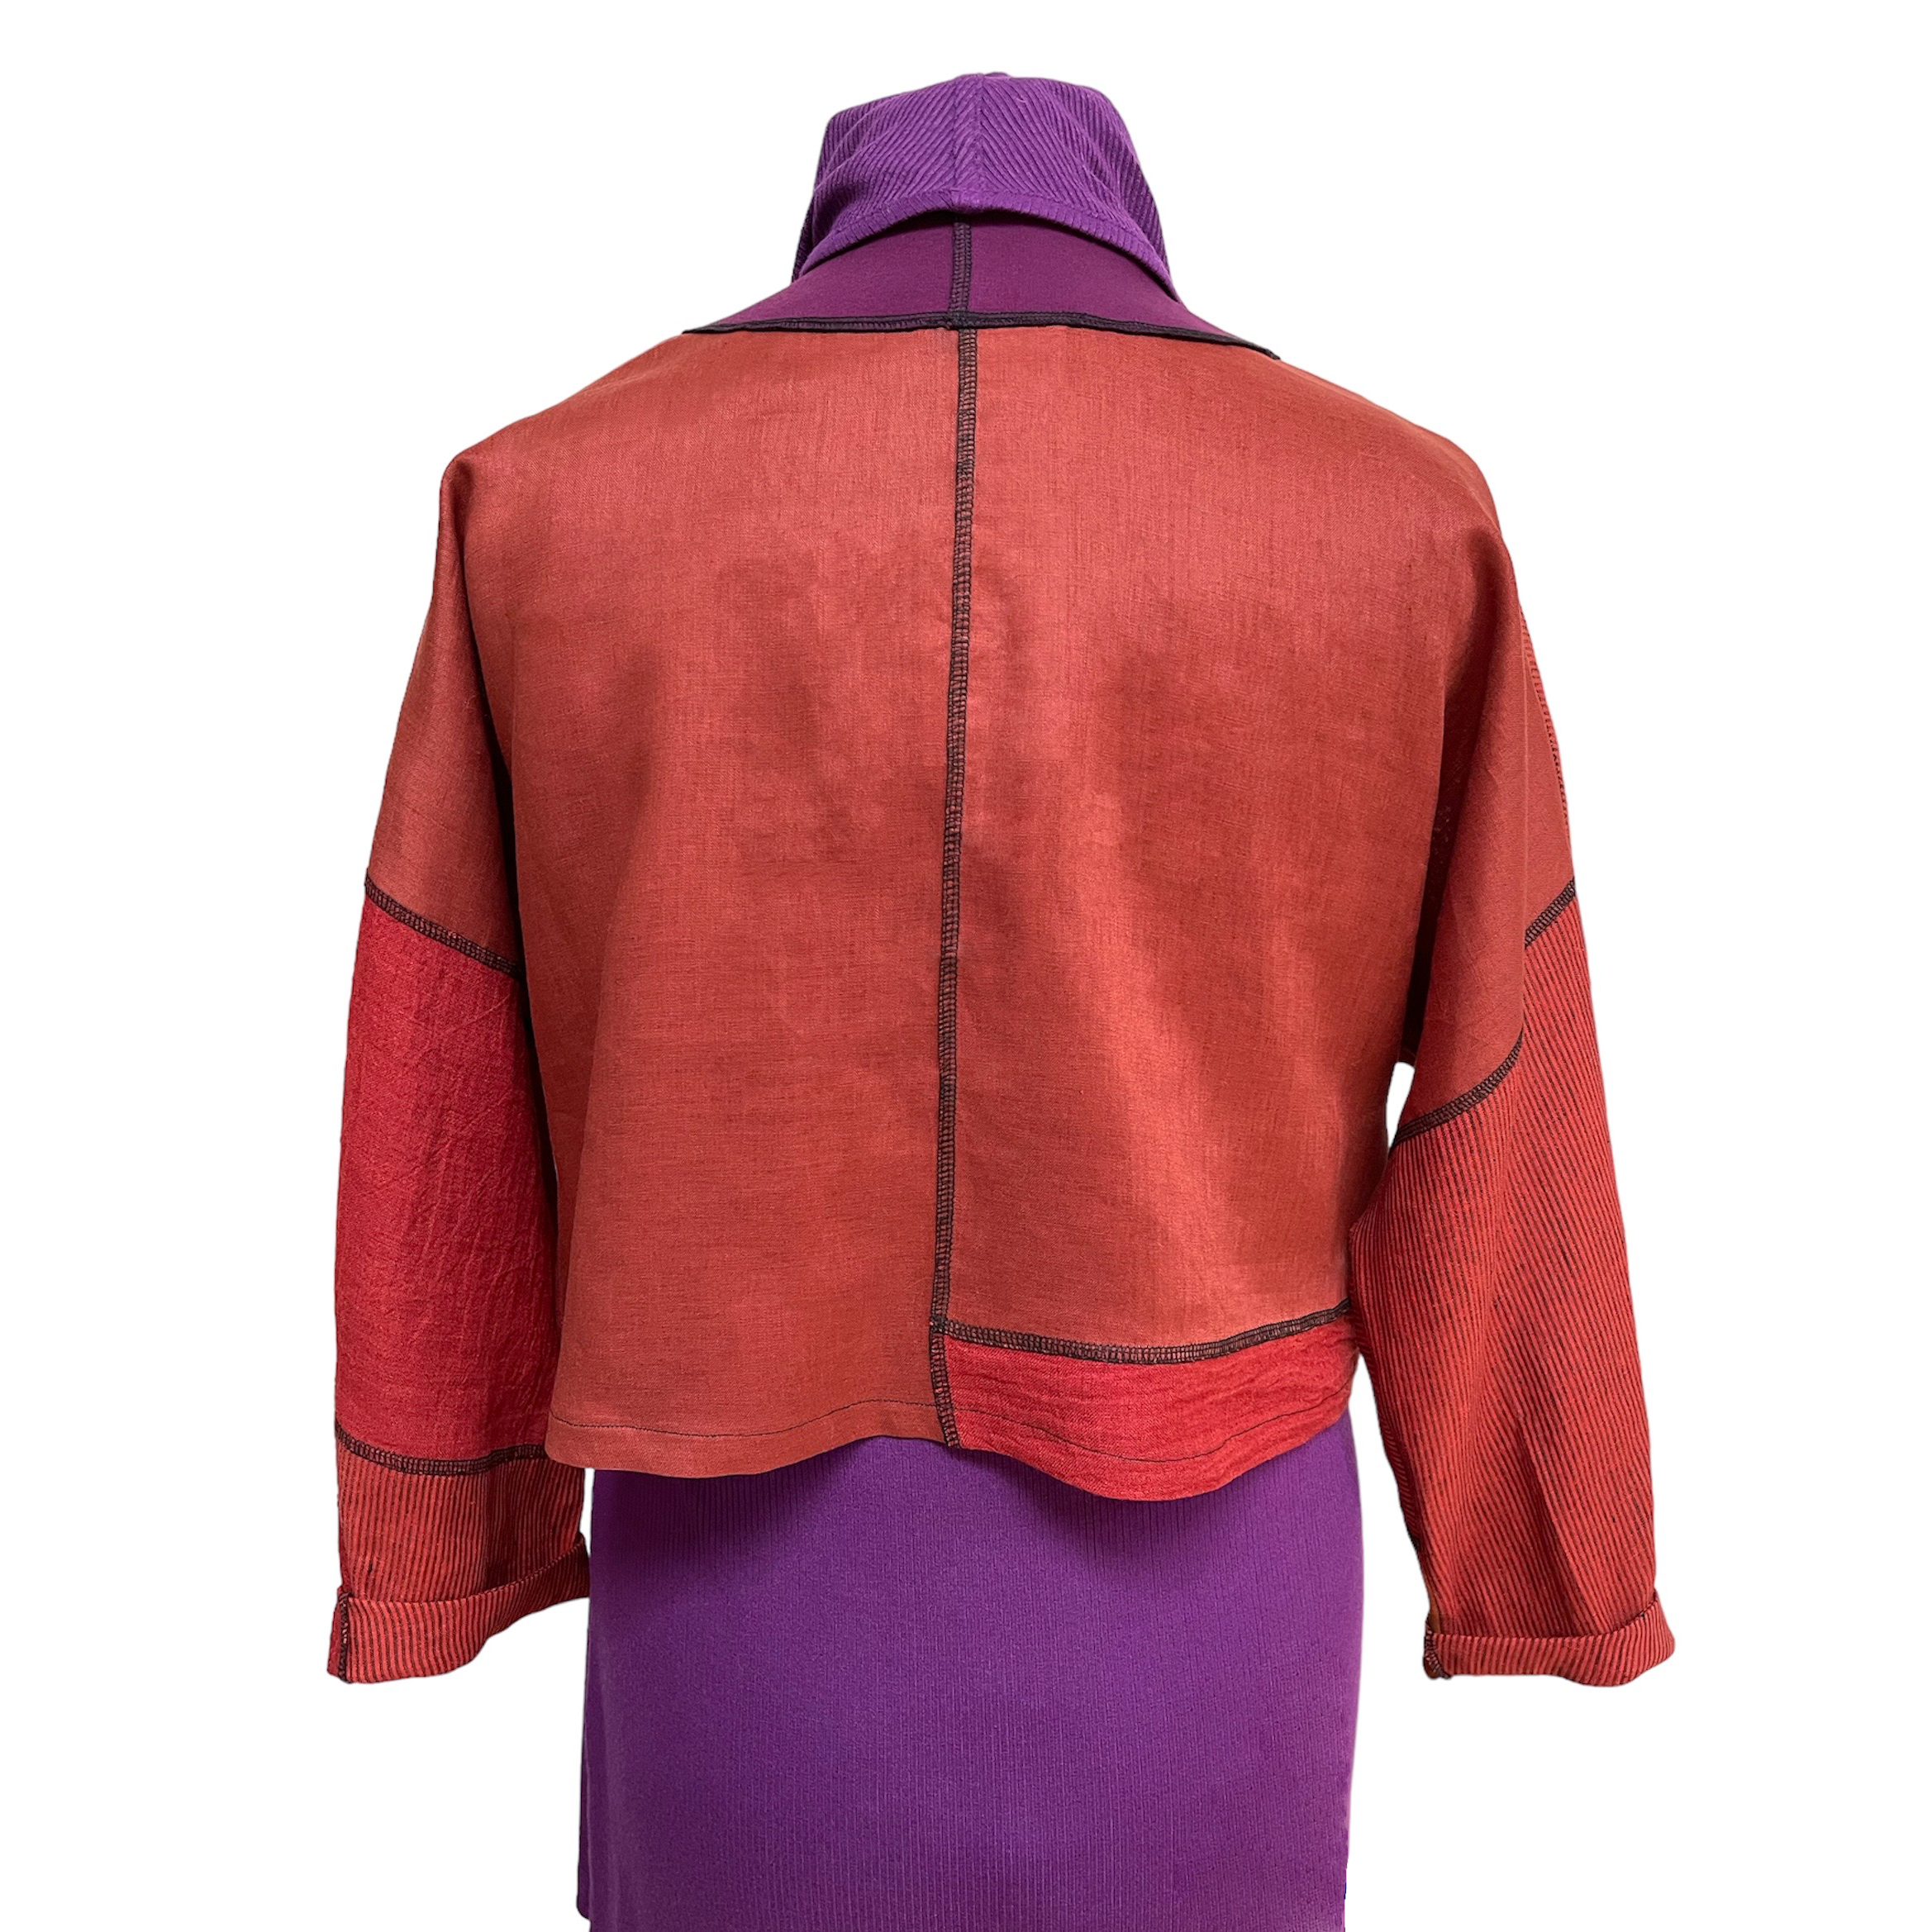 Rust linen bolero jacket